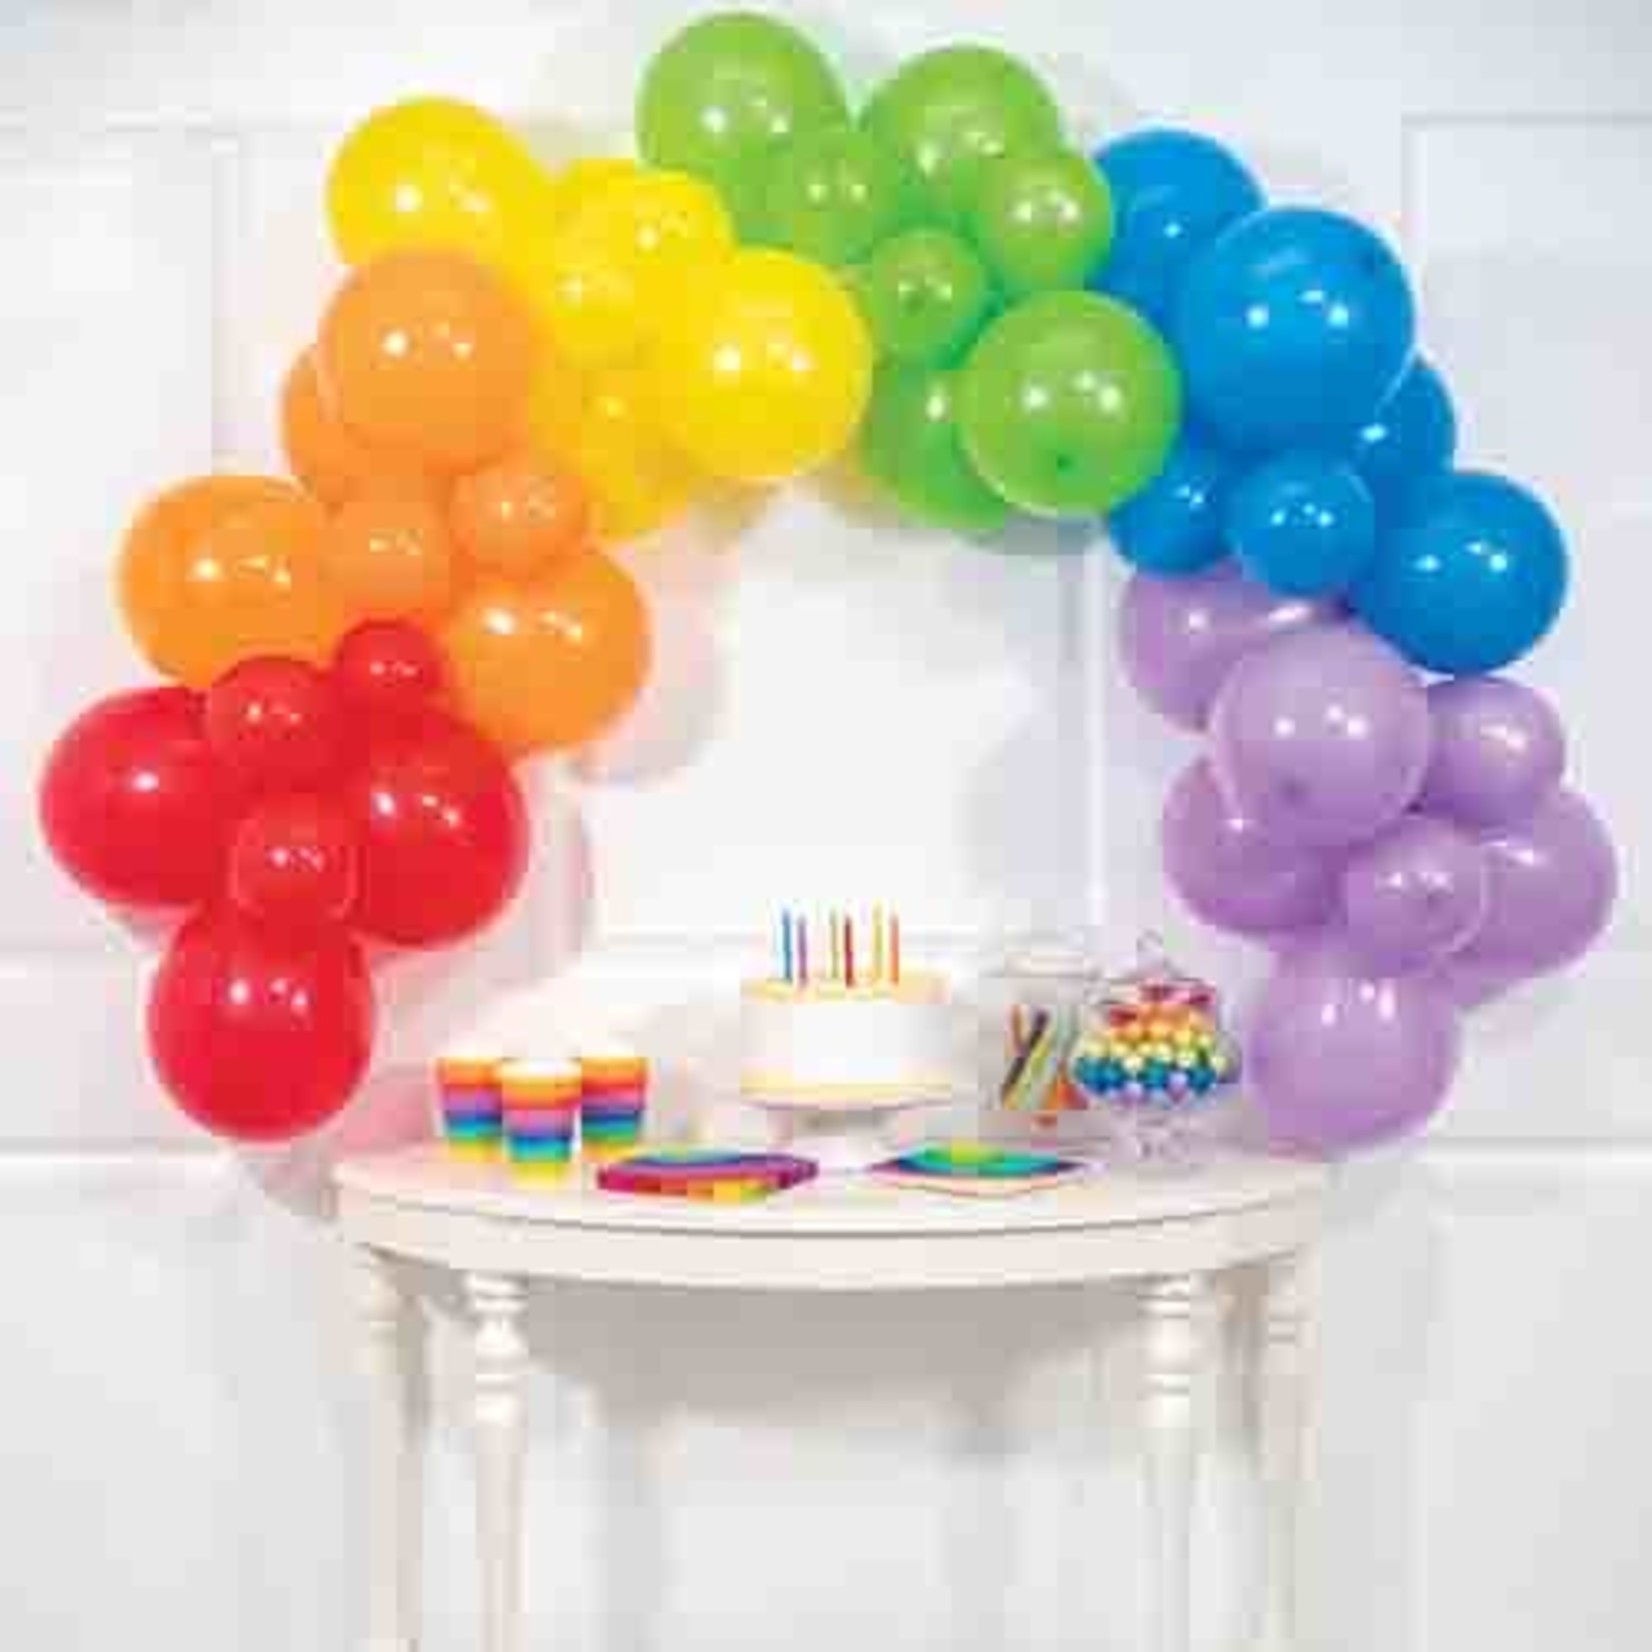 Pastel Rainbow Balloon Garland Kit - Trendy Kids Party Balloon